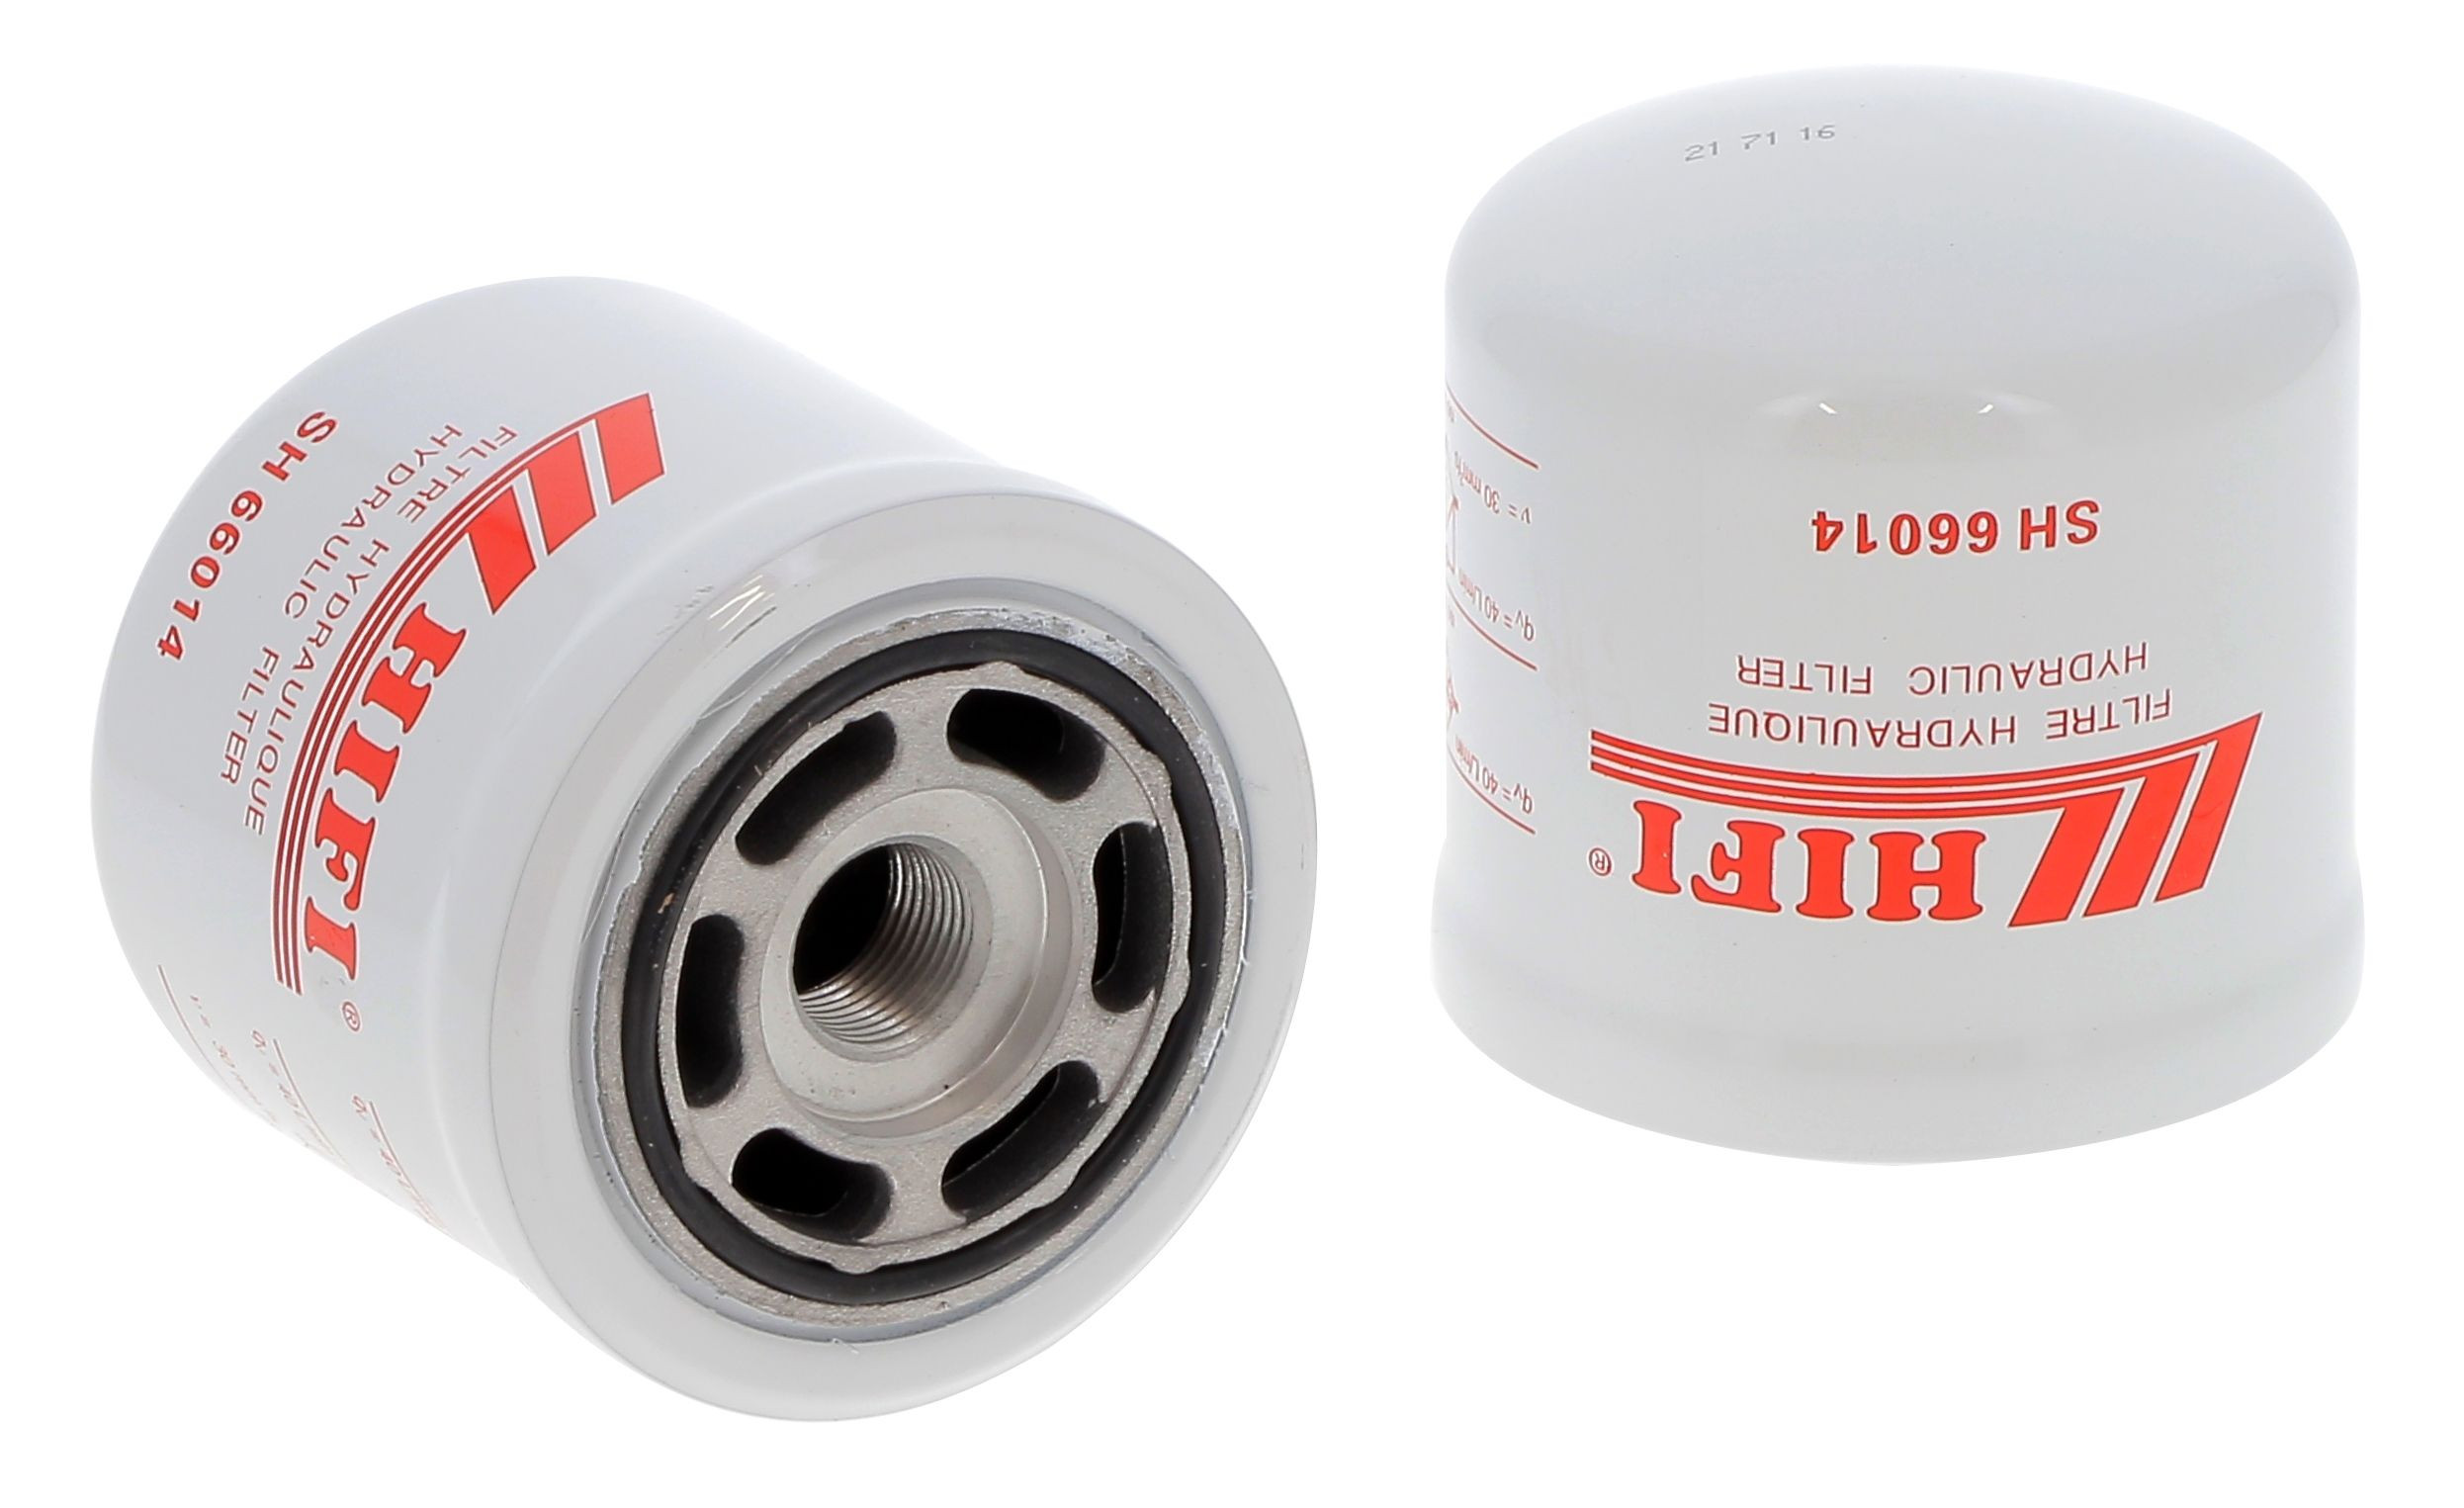 Filtr hydrauliczny  SH 66014 do CLARK DPM 12-20 S L7455